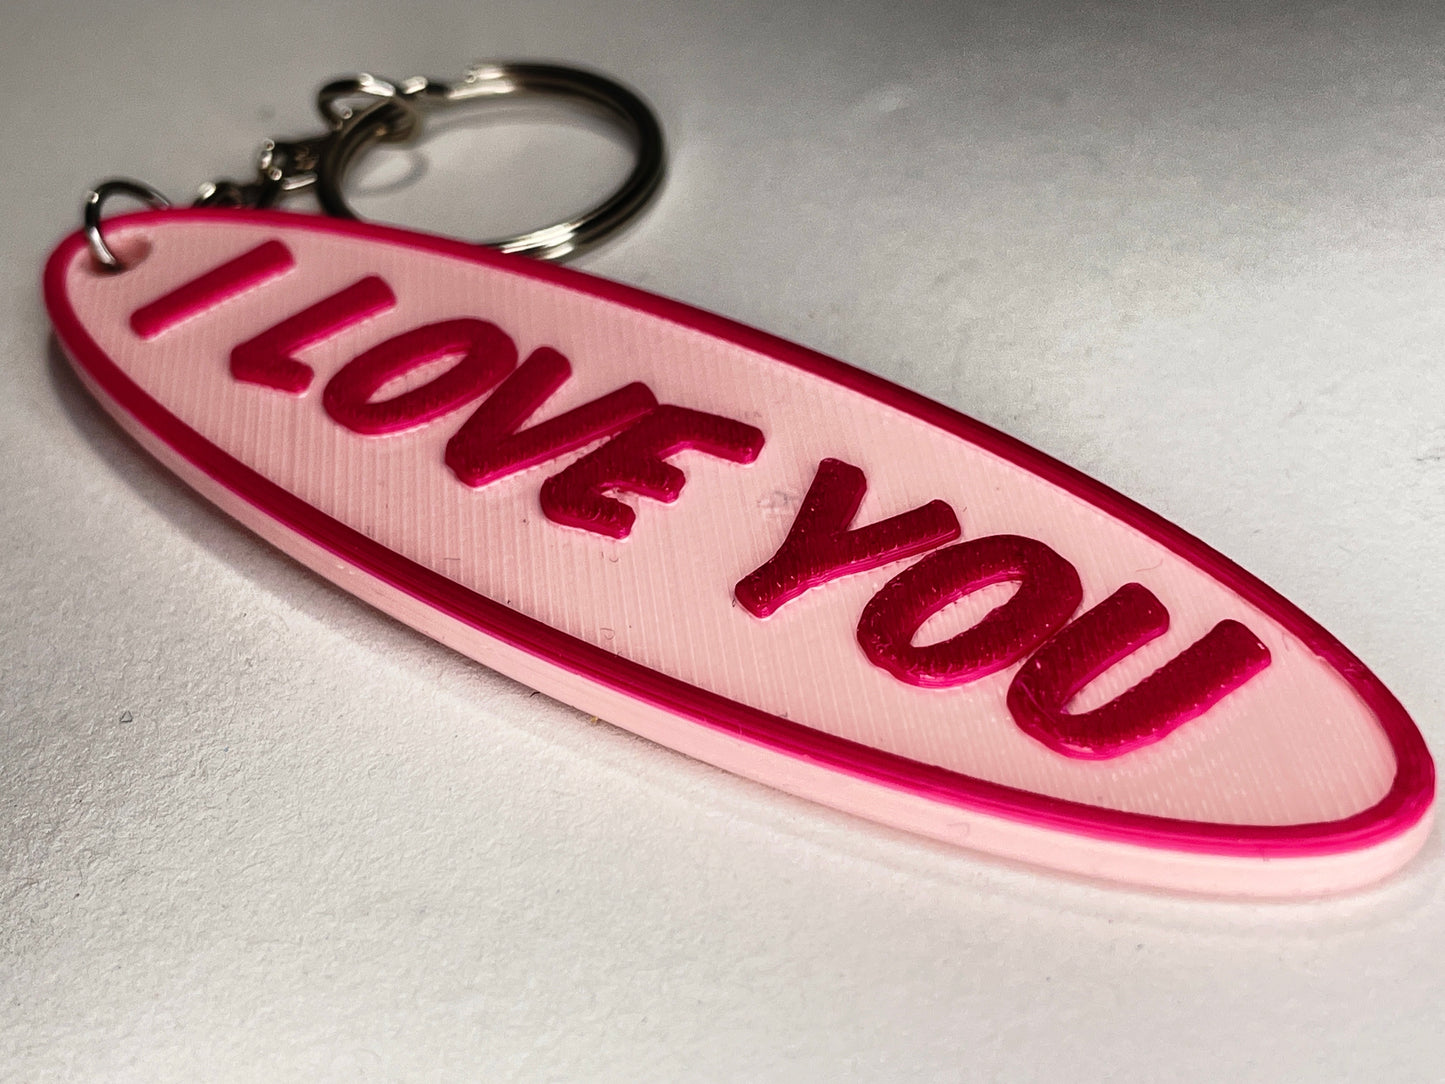 Personalisierbarer Schlüsselanhänger mit Wunschtext - Einzigartiges Accessoire aus 3D-gedrucktem PLA-Kunststoff!